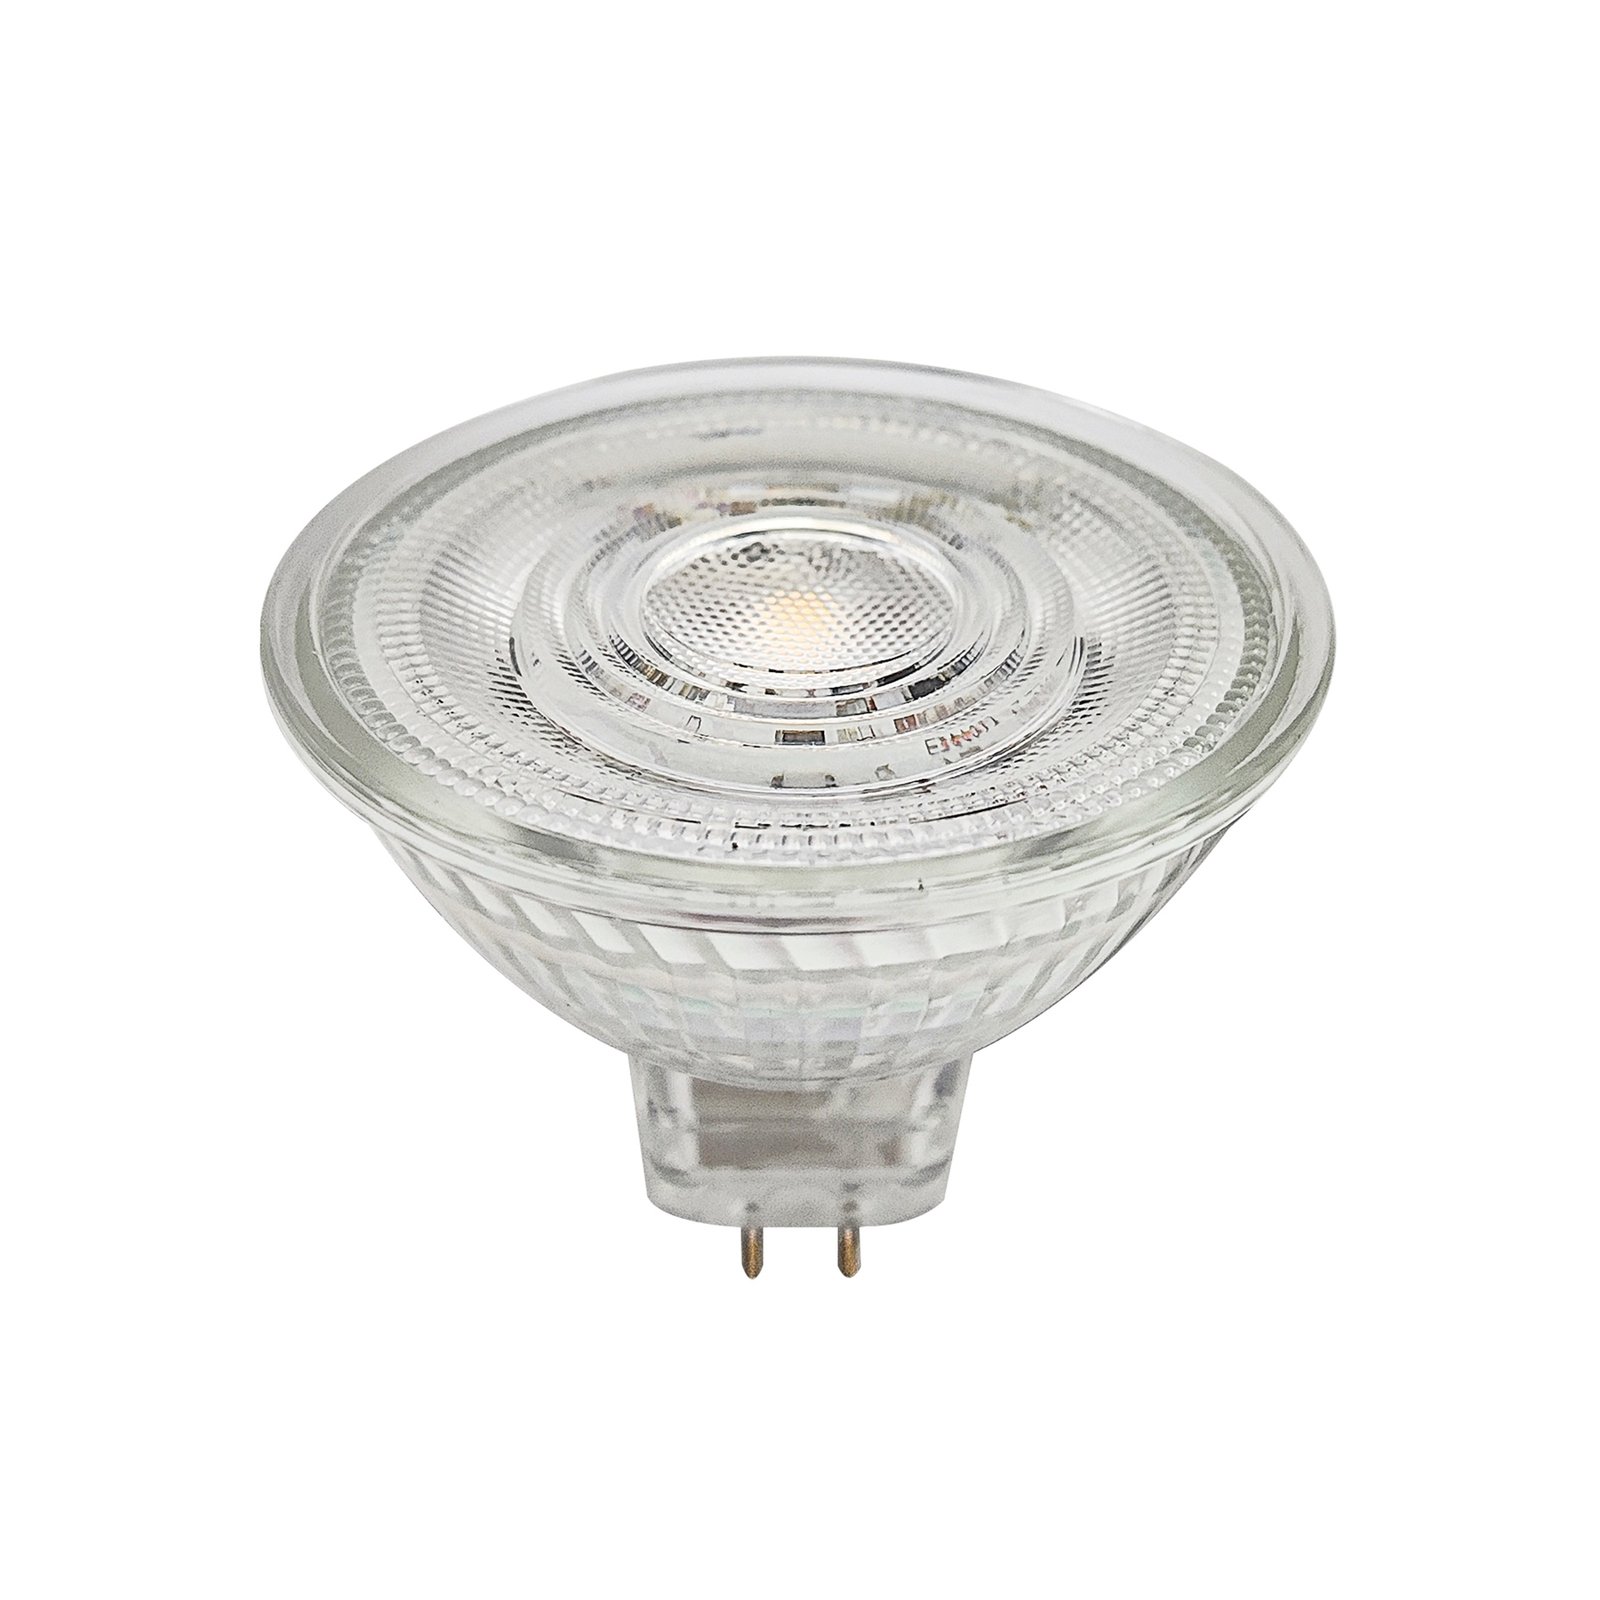 Prios LED bulb GU5.3 4.3W 345lm 36° clear 840 set of 3